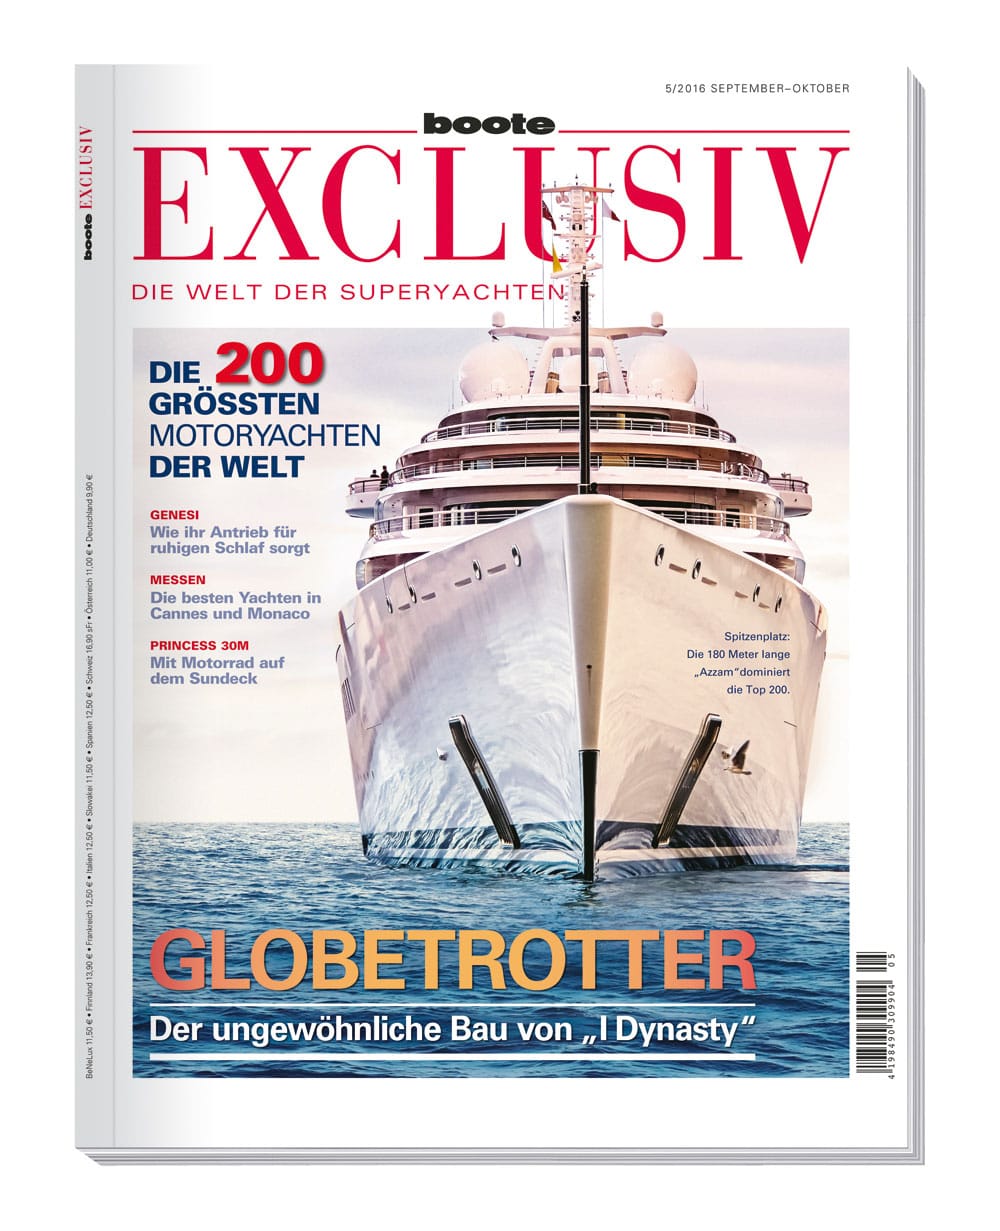 Die komplette Auflistung der größten Motoryachten der Welt zeigt die aktuelle Ausgabe des Magazins "Boote Exclusiv". Das Heft gibt es für 9,90 Euro im Handel.